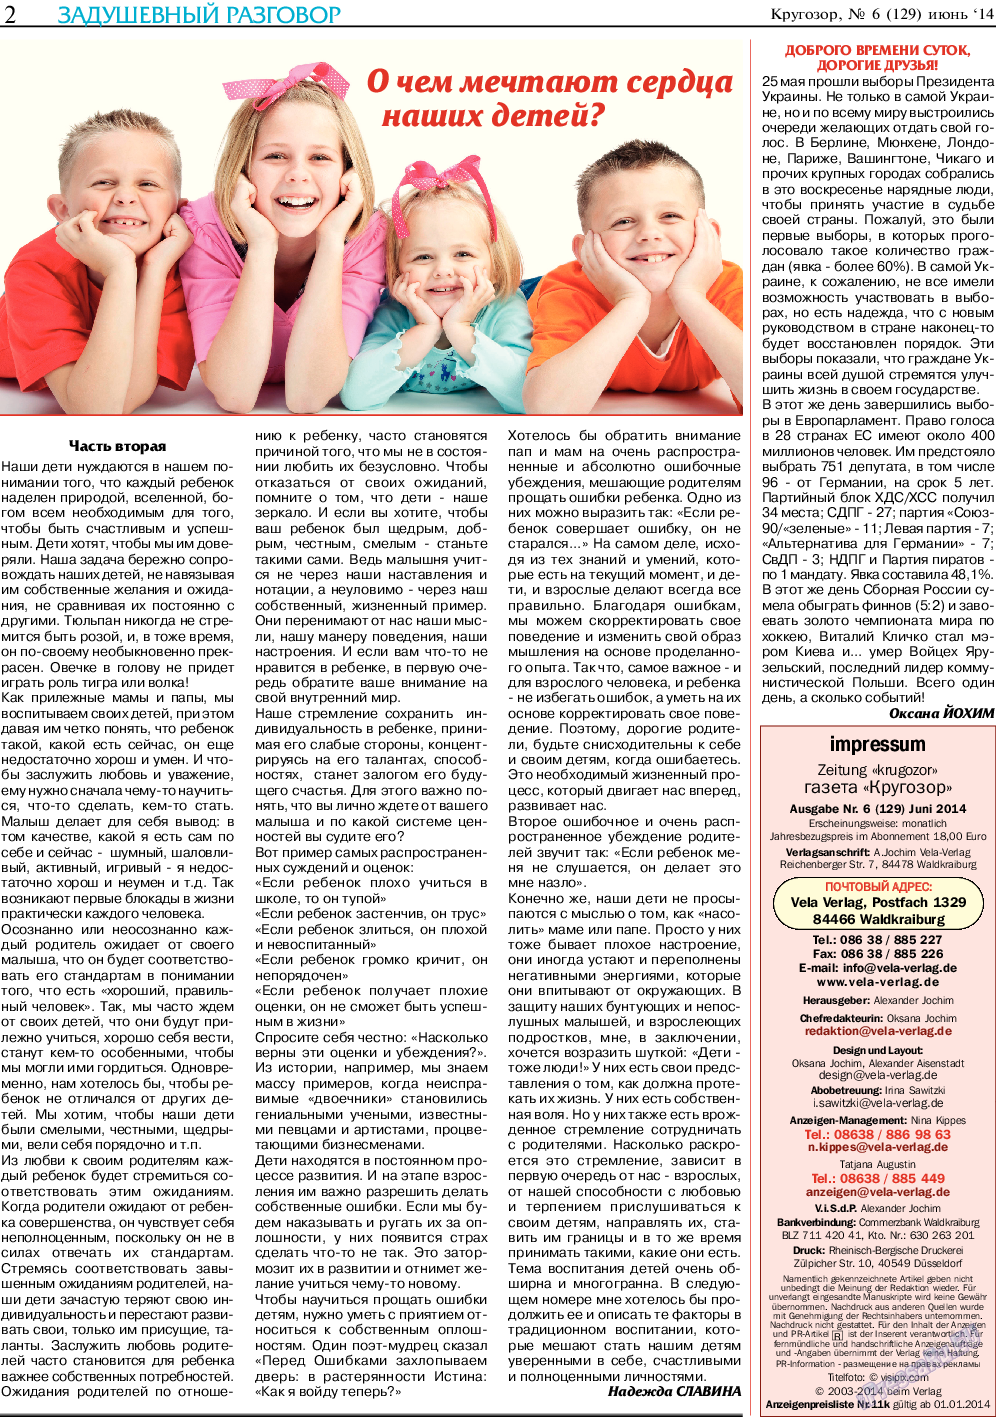 Кругозор (газета). 2014 год, номер 6, стр. 2